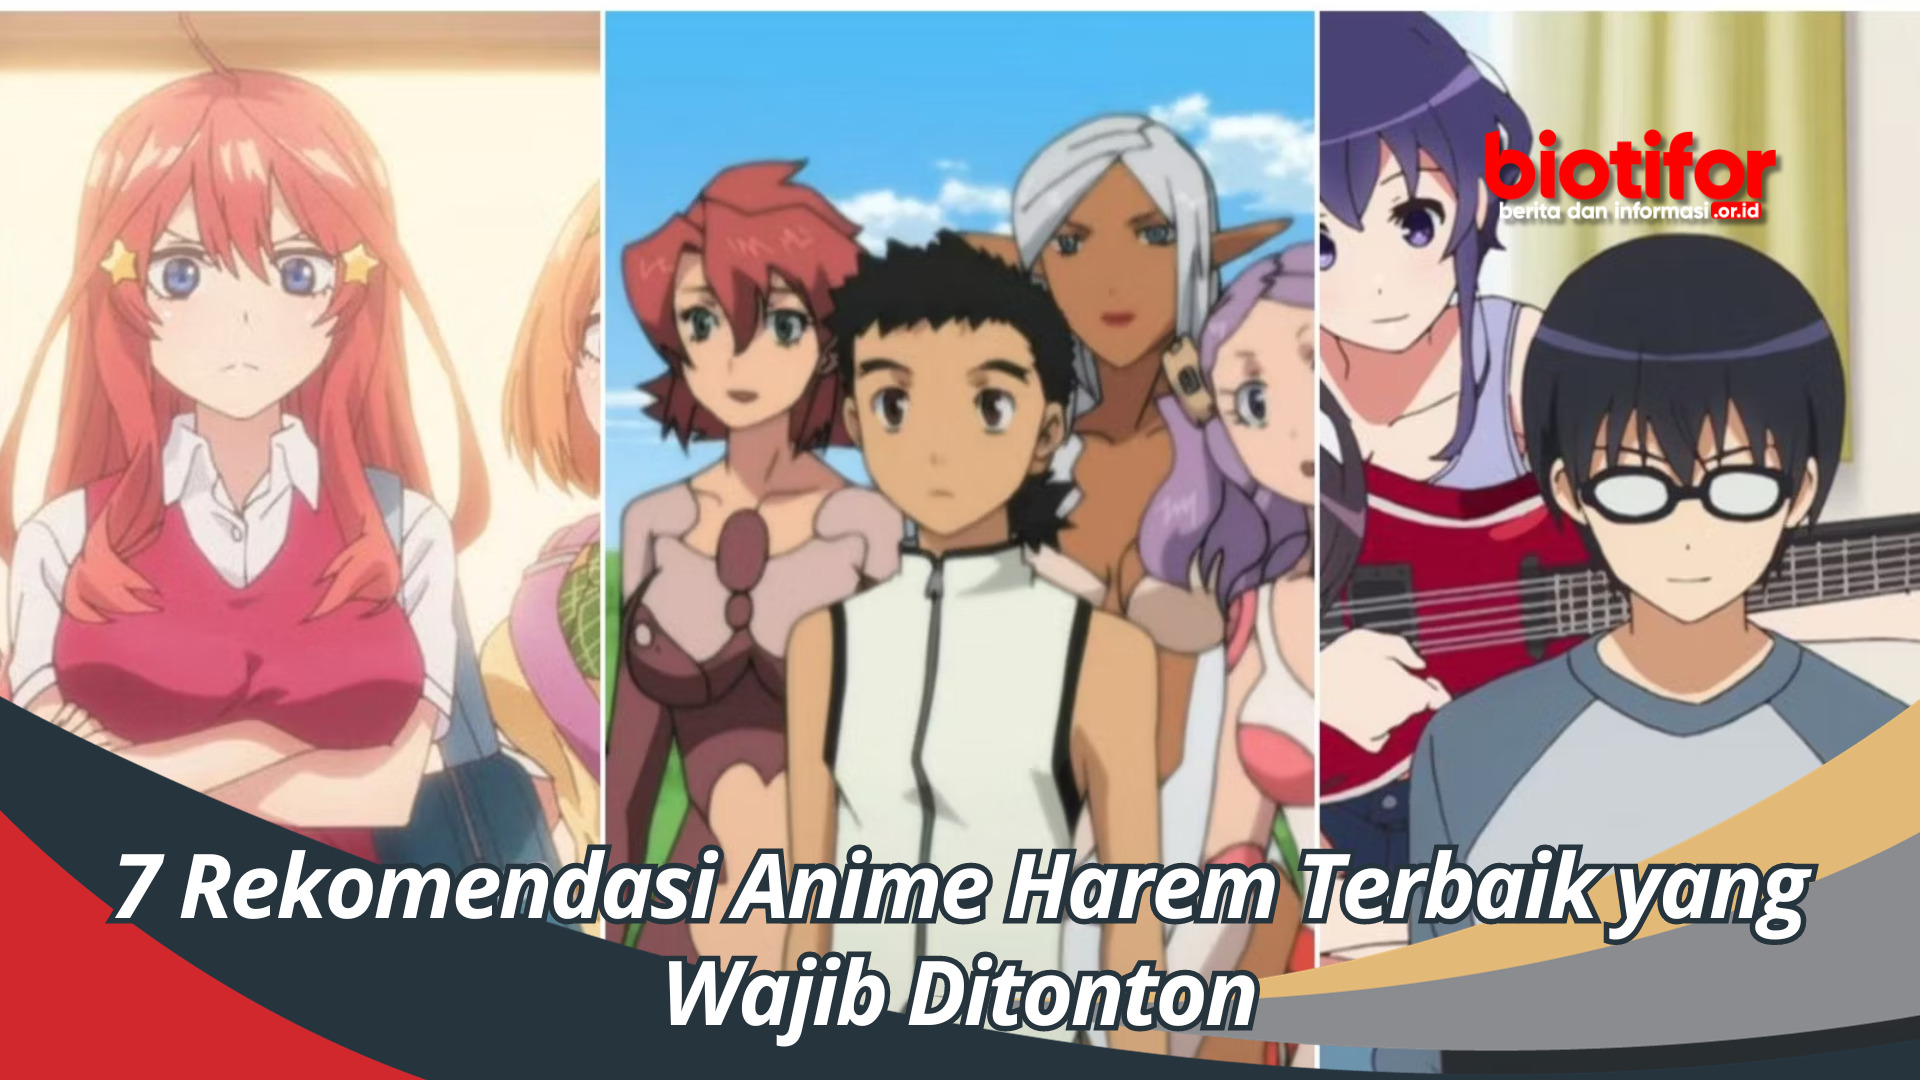 7 Rekomendasi Anime Harem Overpower Paling Seru, Wajib Ditonton